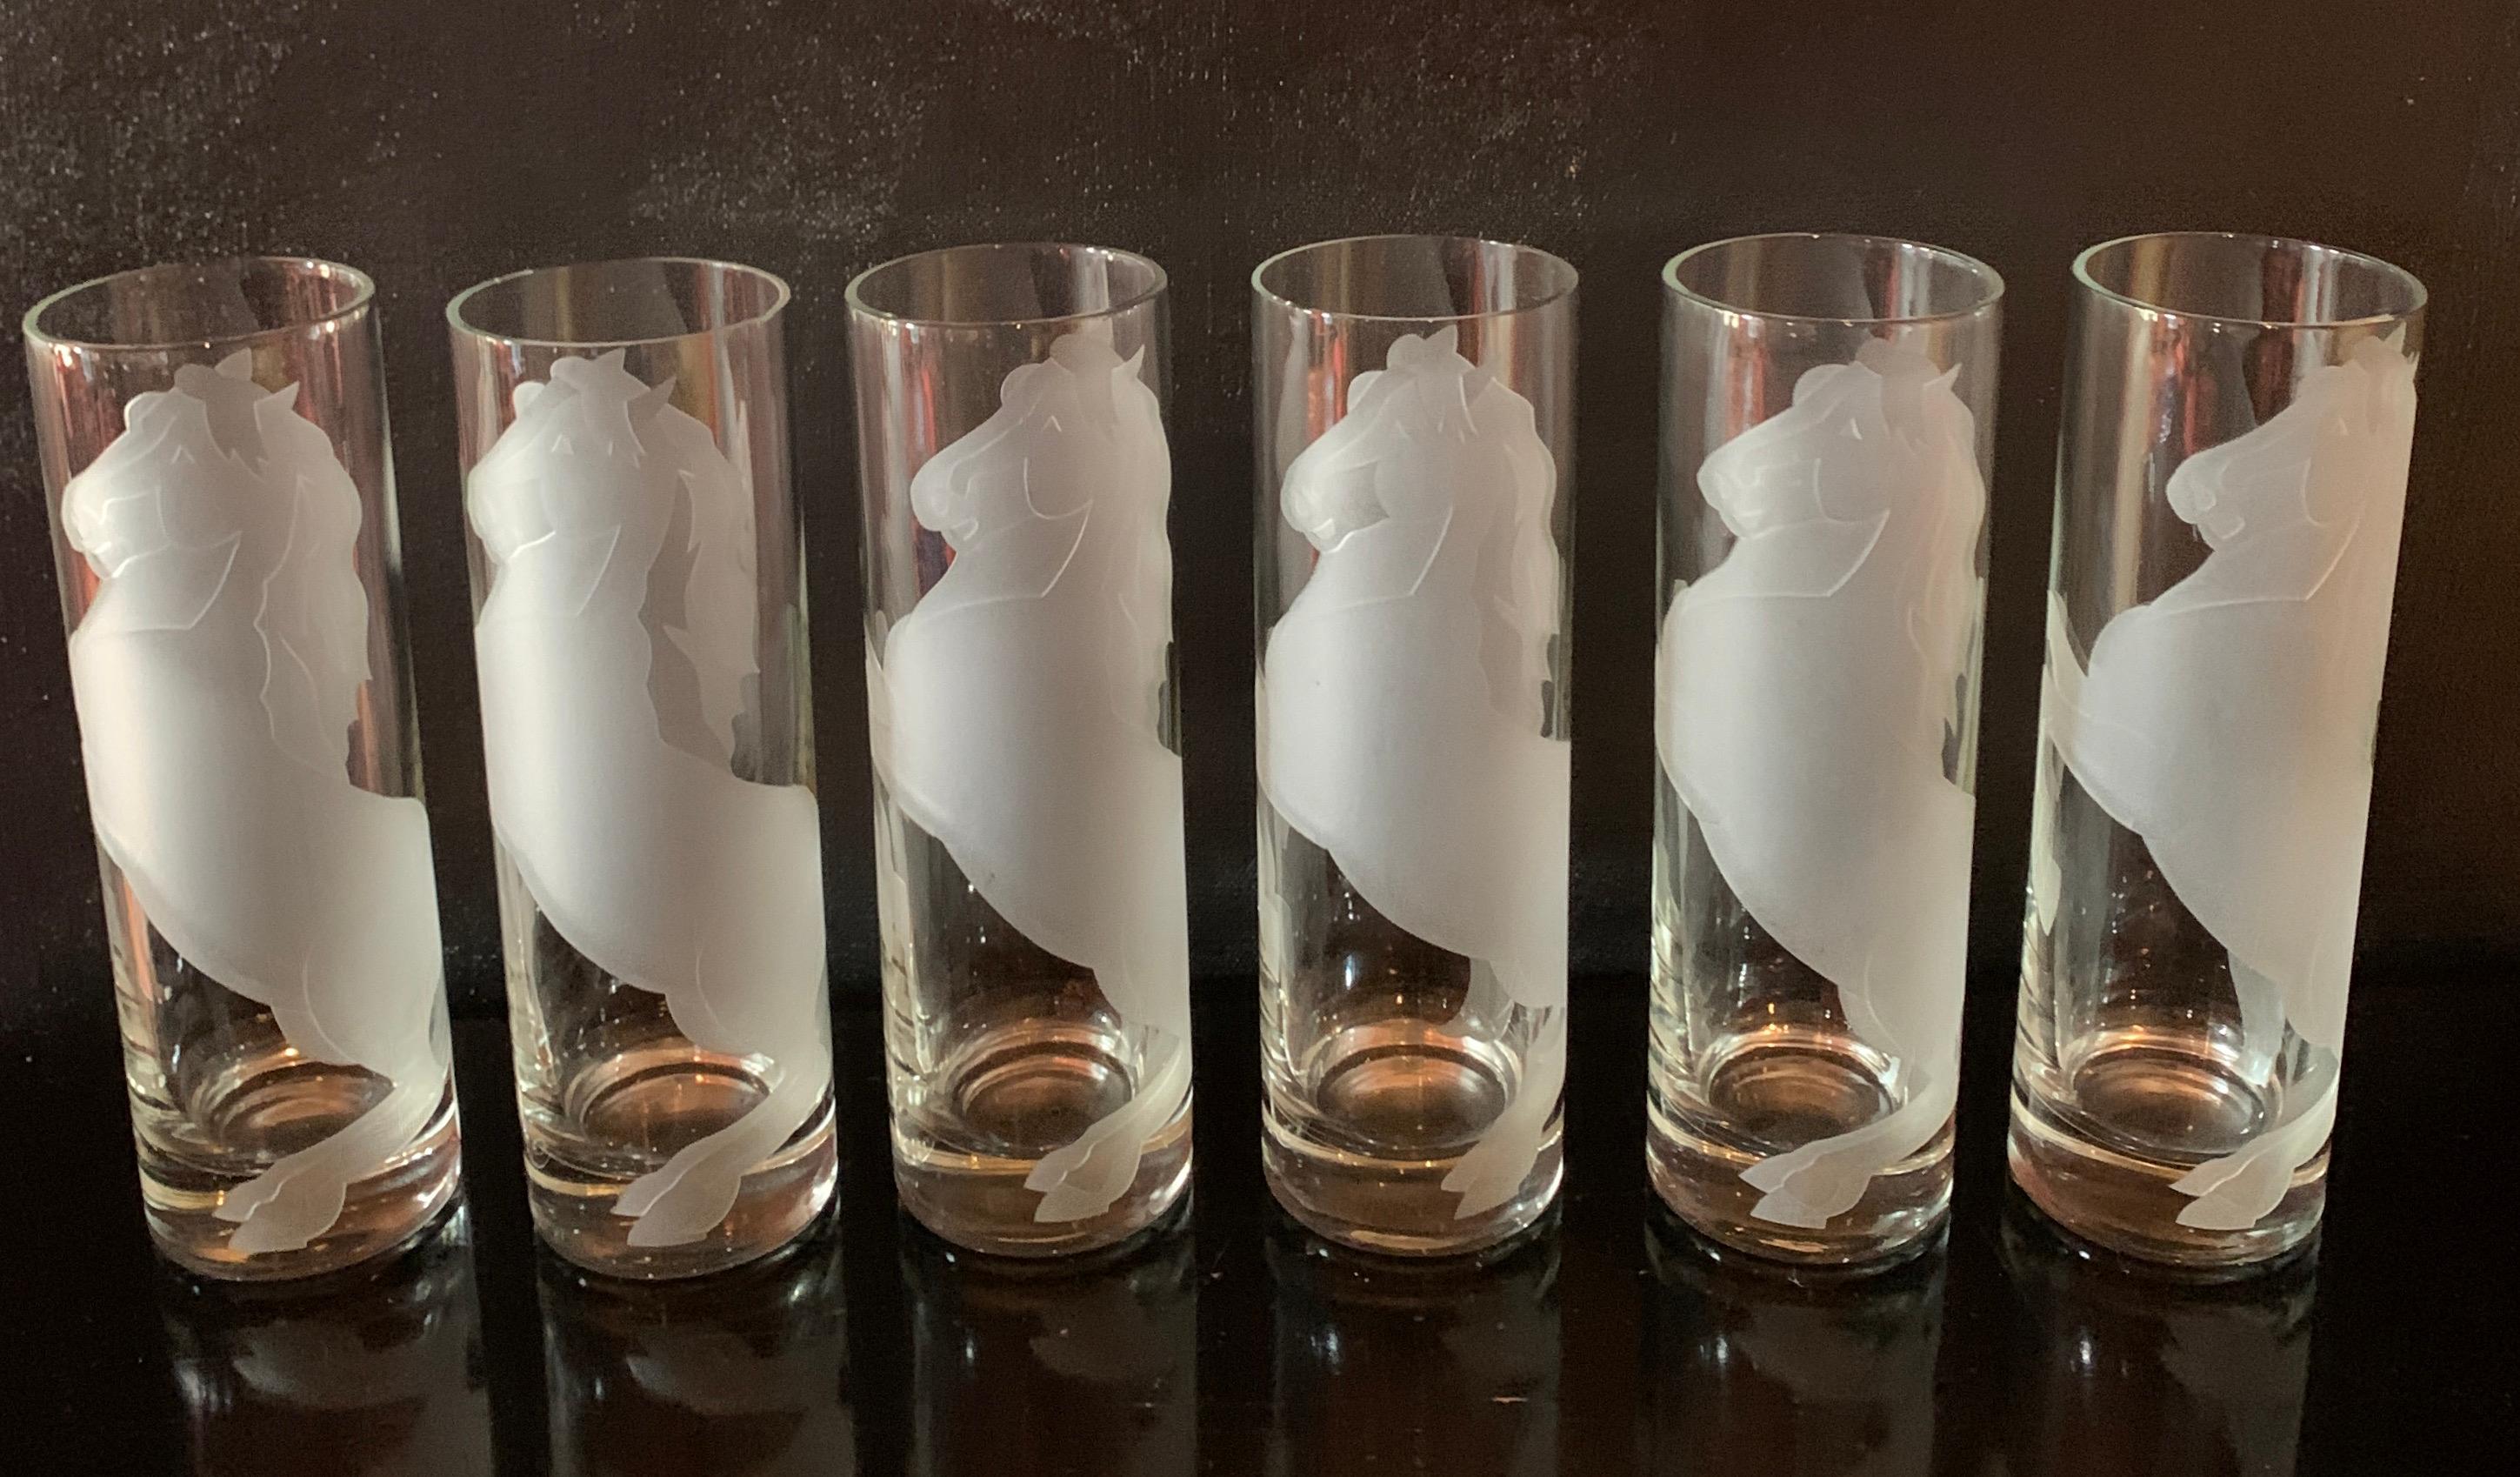 Ensemble de six verres à cocktail gravés à l'encre de cheval, de style déco - un ensemble étonnant et un complément à tout bar ou table de salle à manger. Le cheval stylisé orne les lunettes et s'enroule autour du périmètre des lunettes.